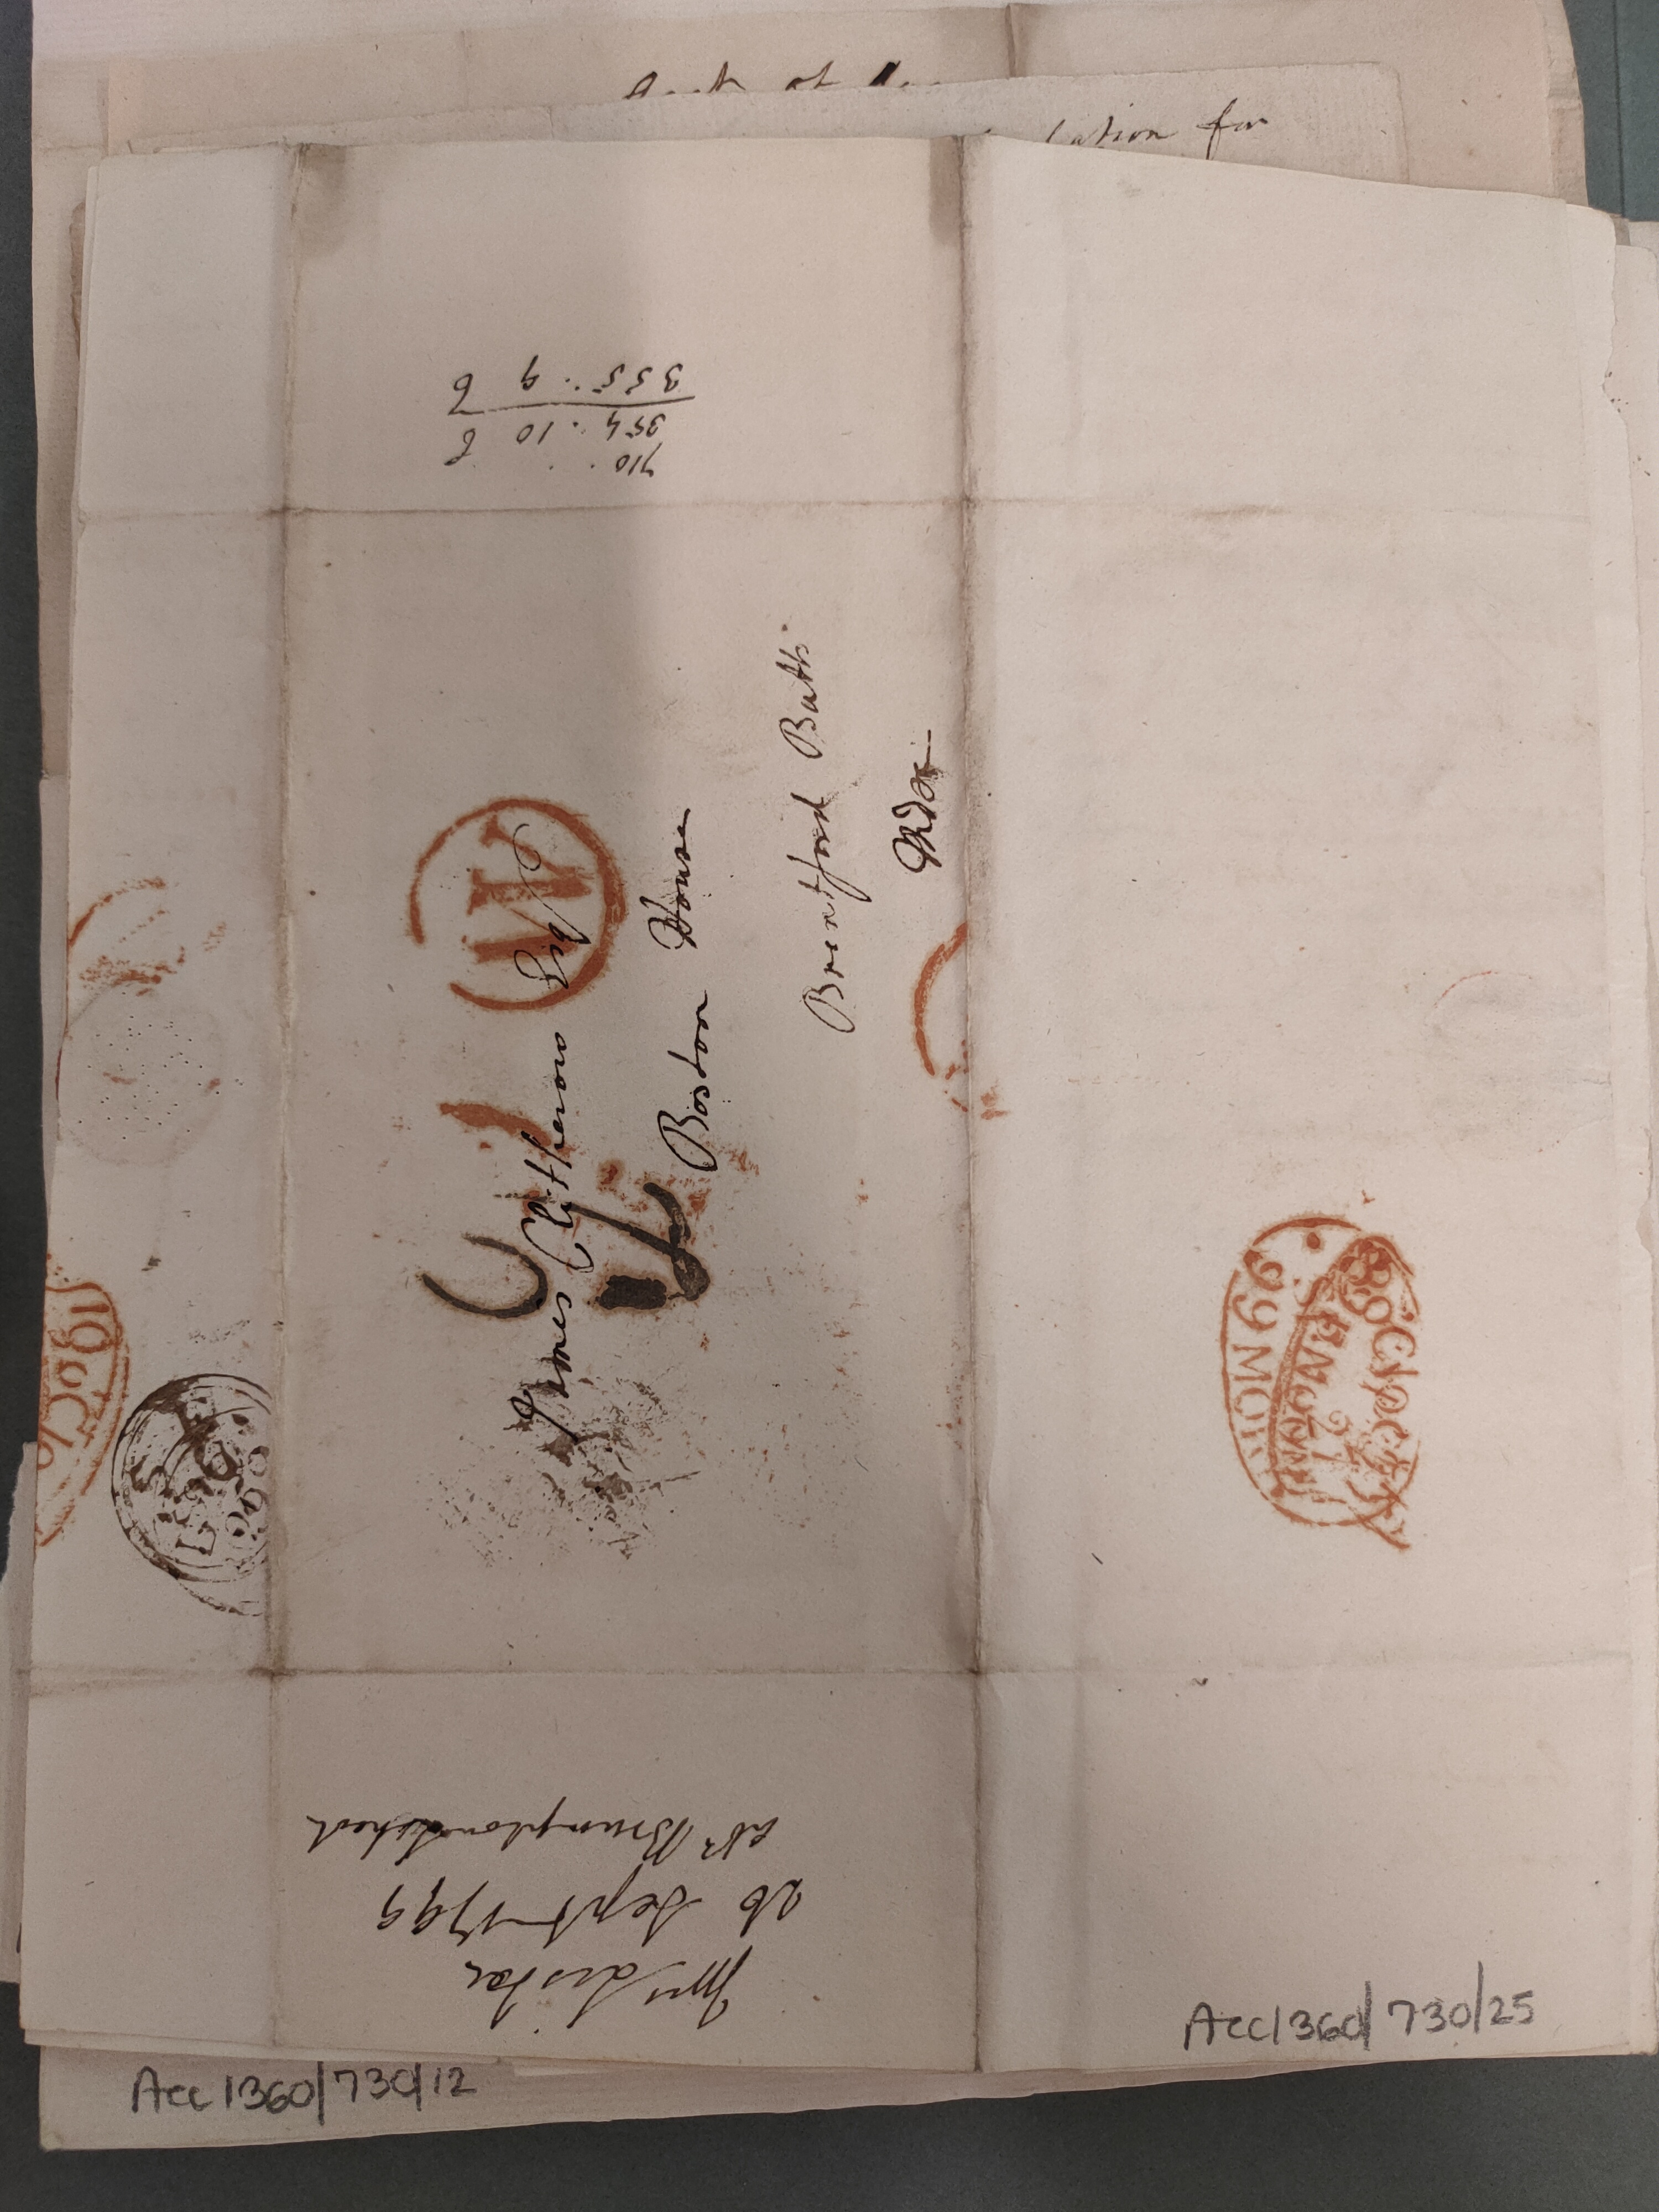 Image #3 of letter: Elizabeth Lister to James Clitherow Esq, 26 September 1799